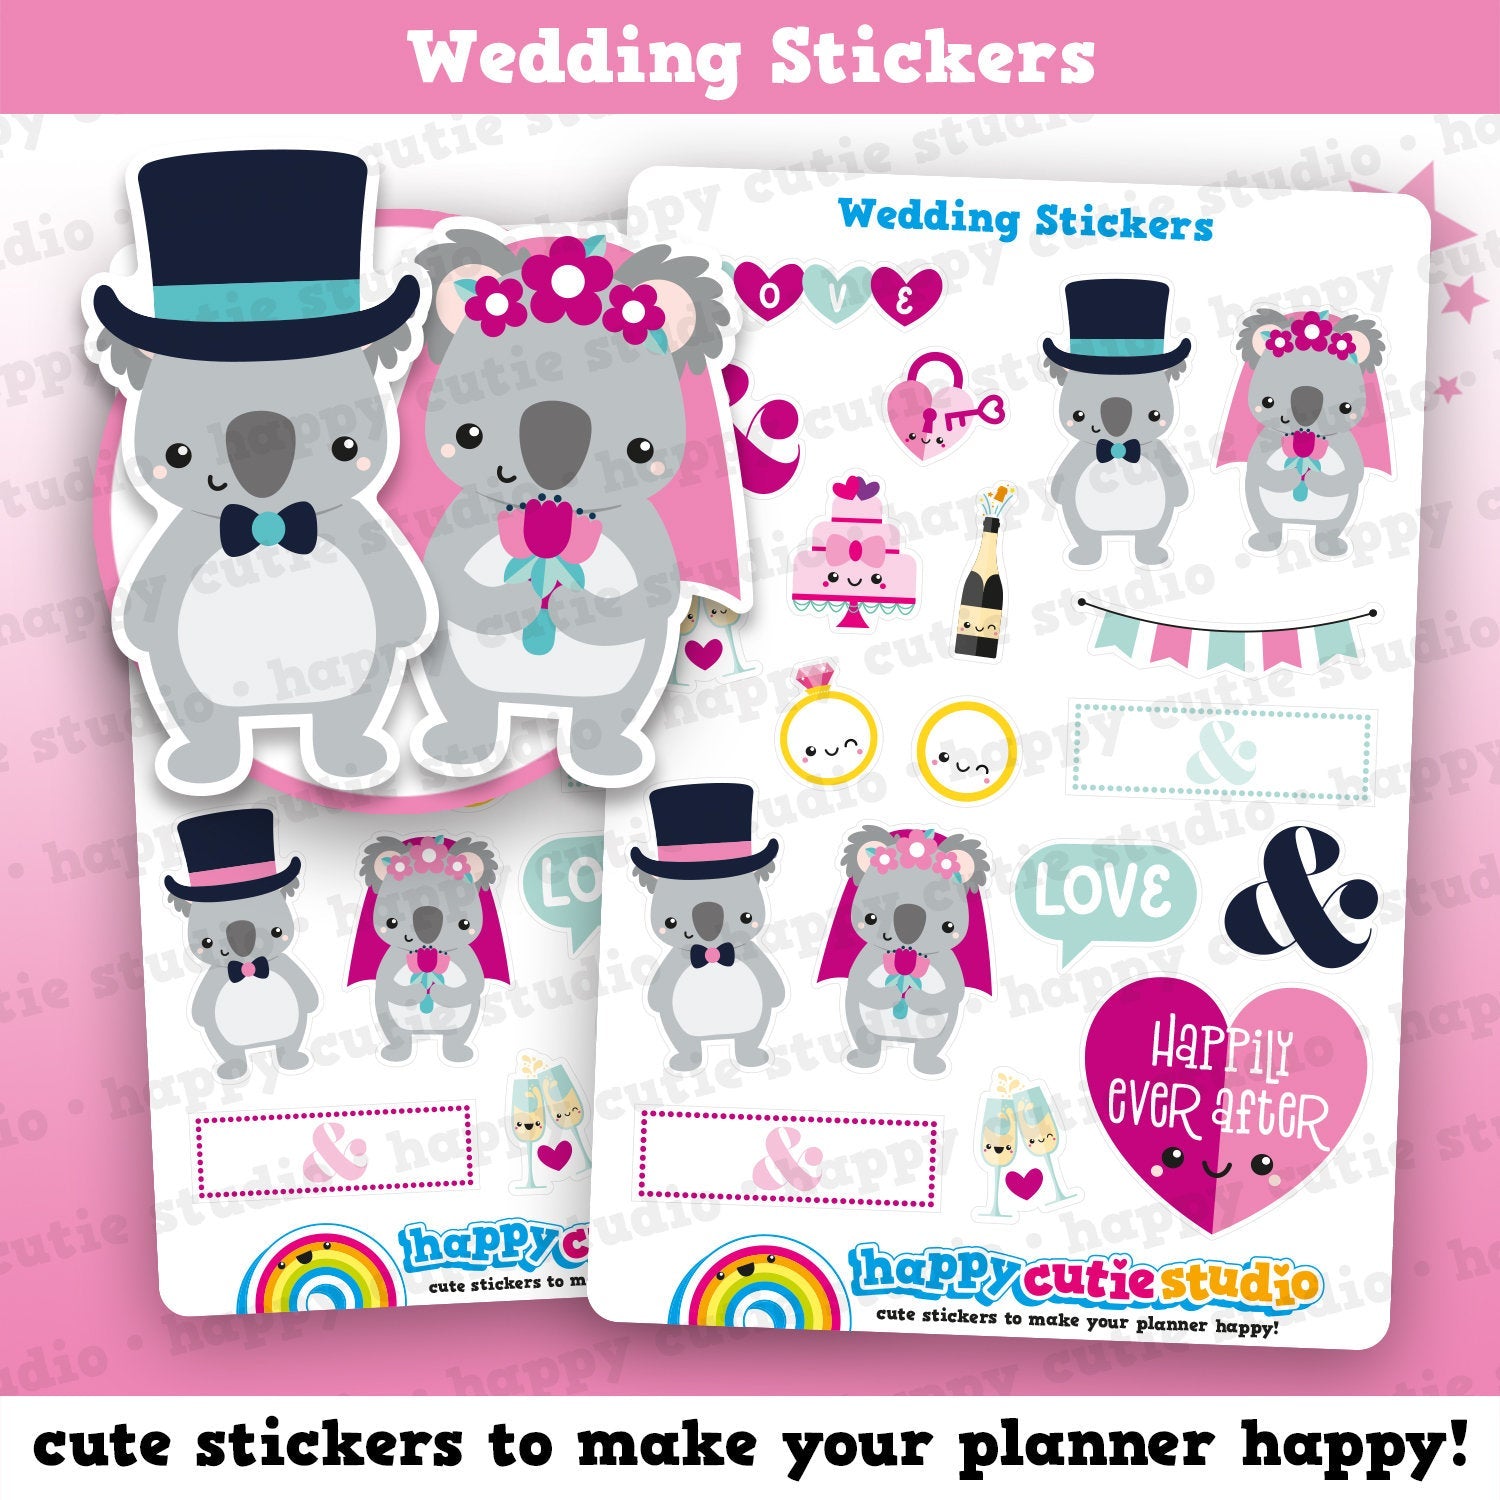 18 Cute Wedding/Big Day/LovePlanner Stickers